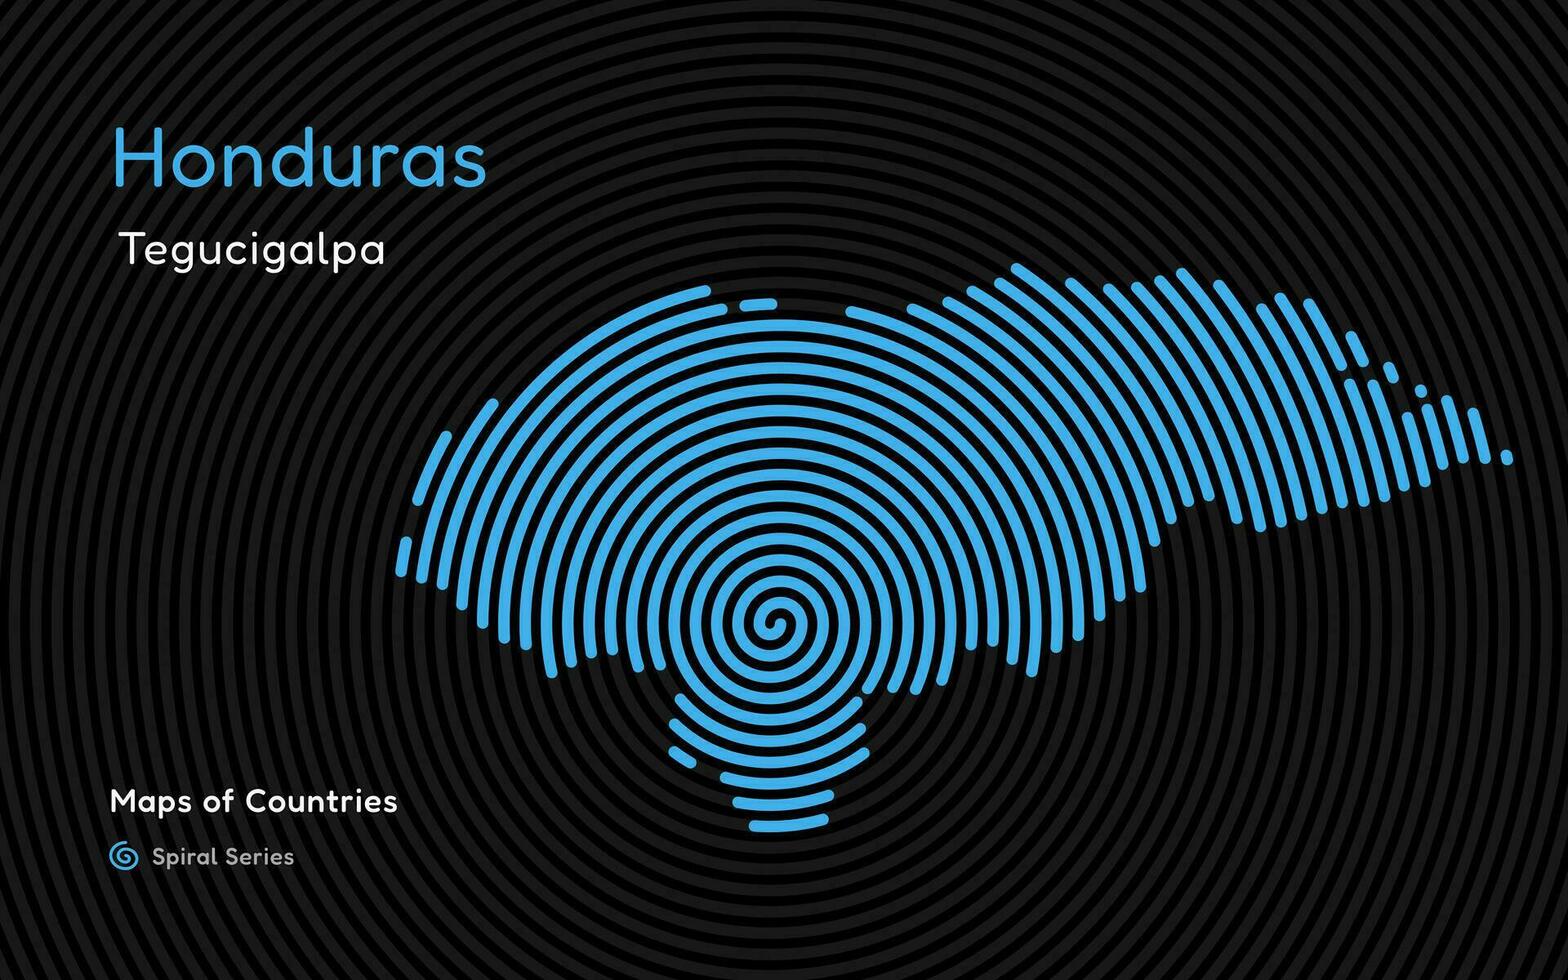 abstrait carte de Honduras dans une cercle spirale modèle avec une Capitale de tegucigalpa. Latin Amérique ensemble. vecteur